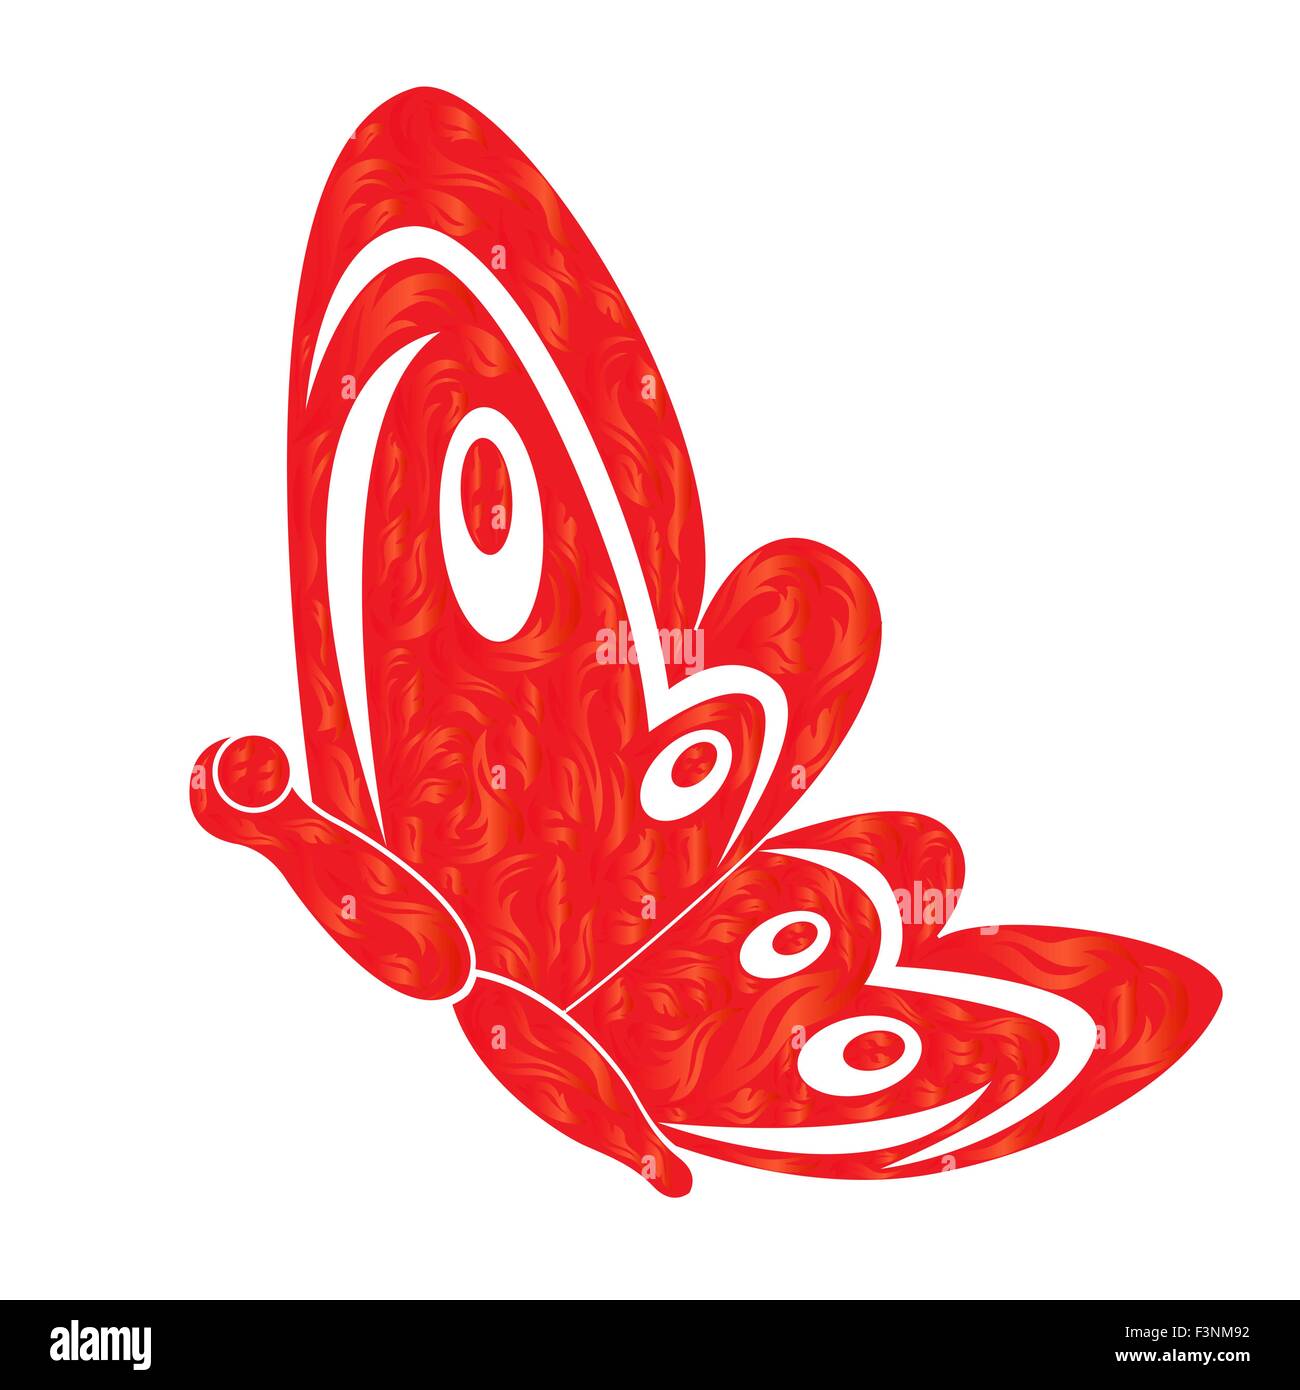 Roten feurigen Schmetterling auf dem weißen Hintergrund, Hand Zeichnung stilisierte Vektor-illustration Stock Vektor